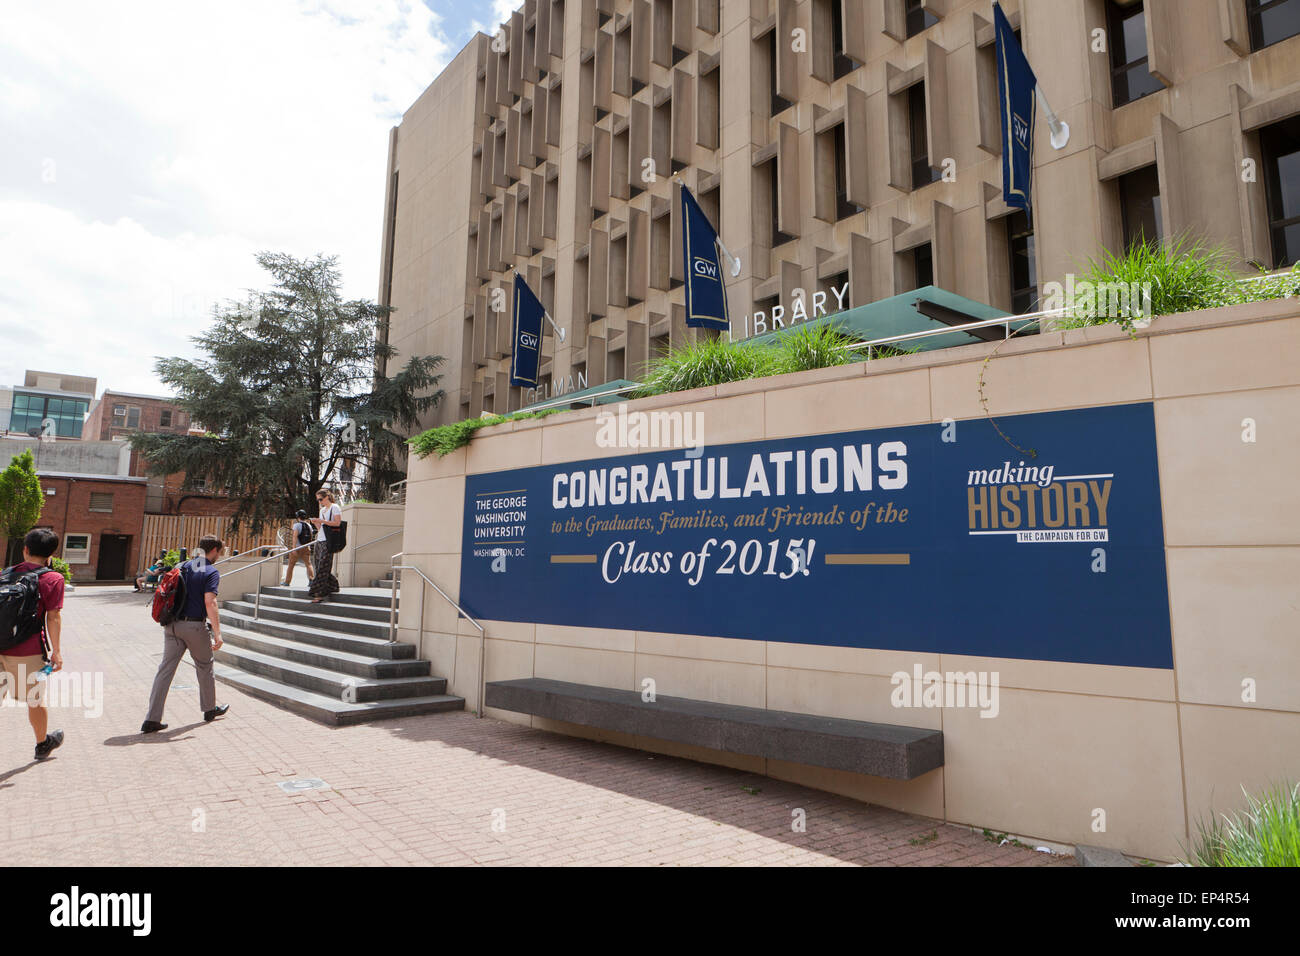 Herzlichen Glückwunsch abonnieren dem Abschluss Klasse 2015, George Washington University - Washington, DC USA Stockfoto